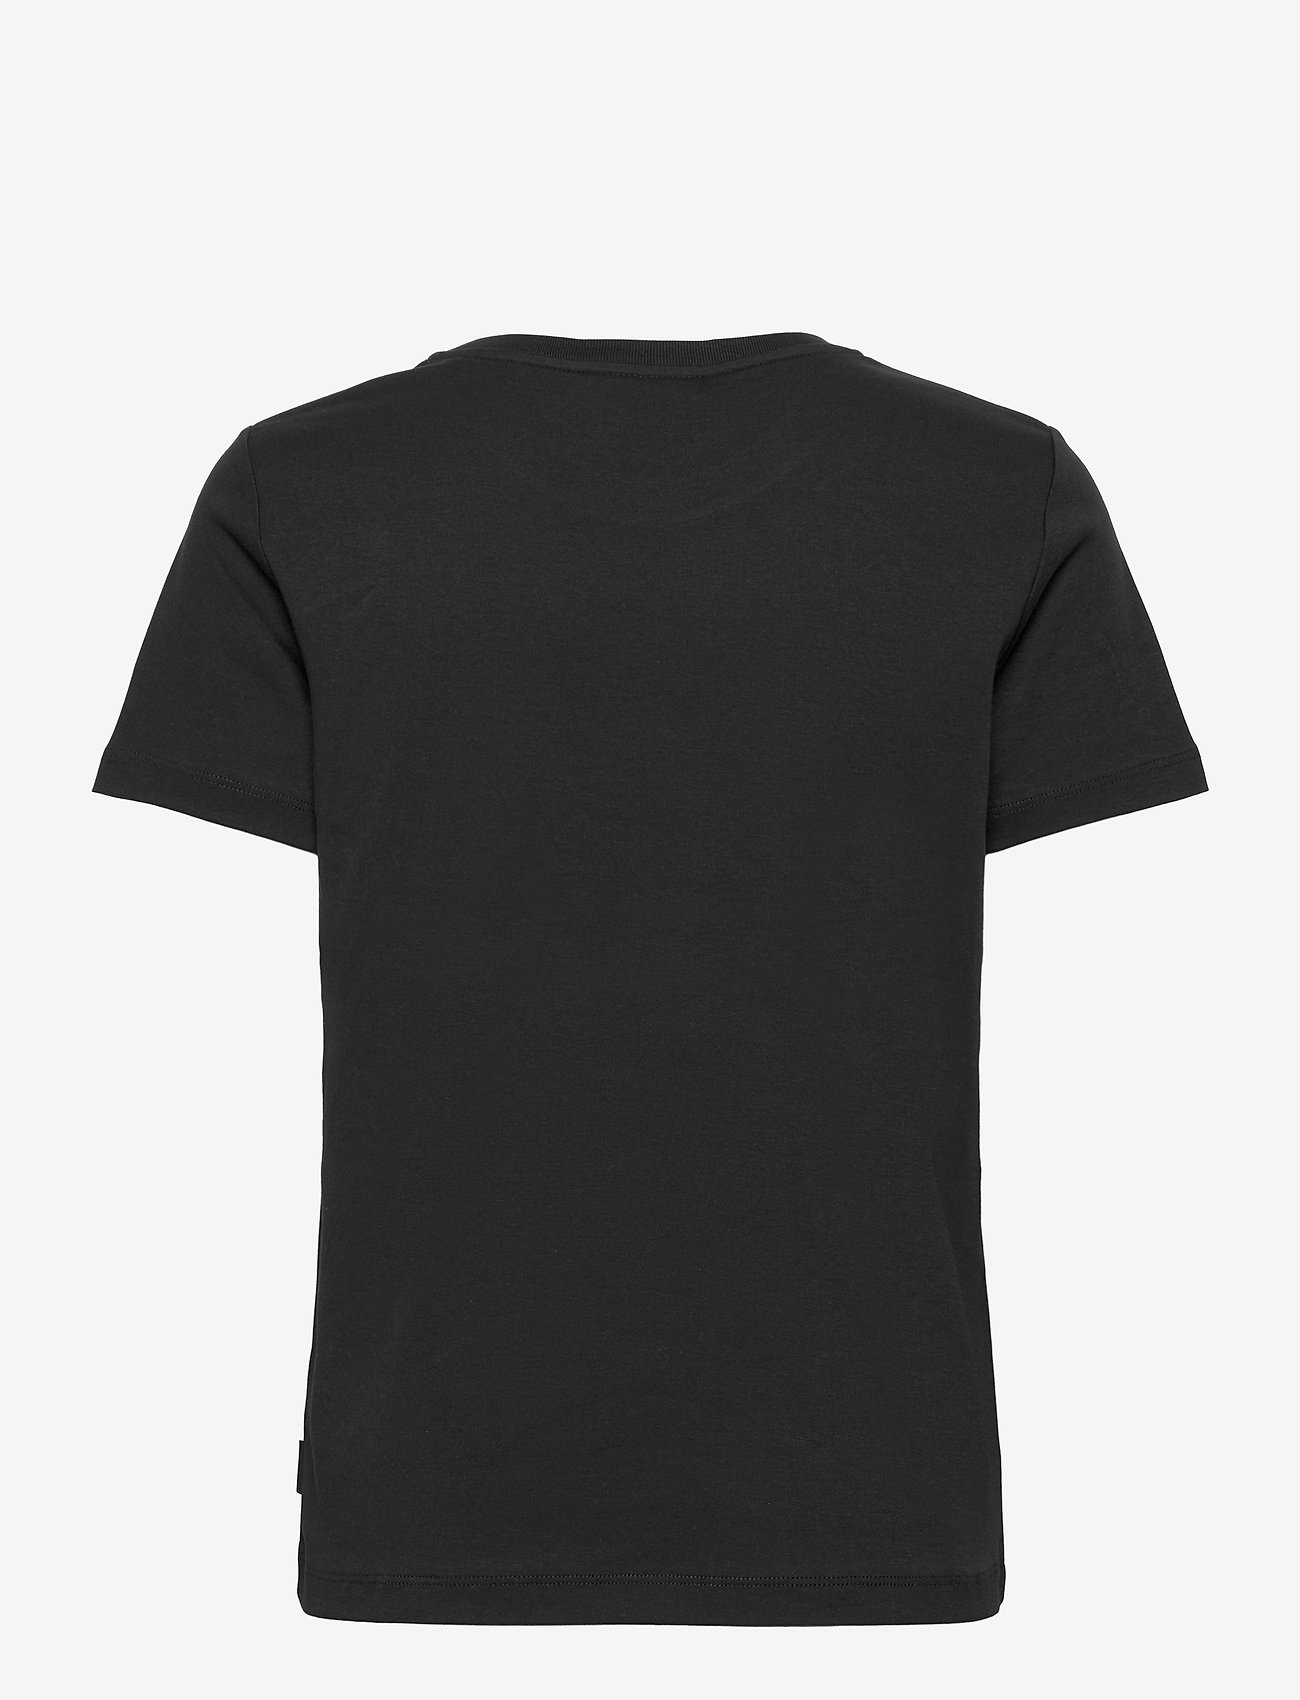 Calvin Klein Ck New York Patch T-shirt - T-shirts | Boozt.com